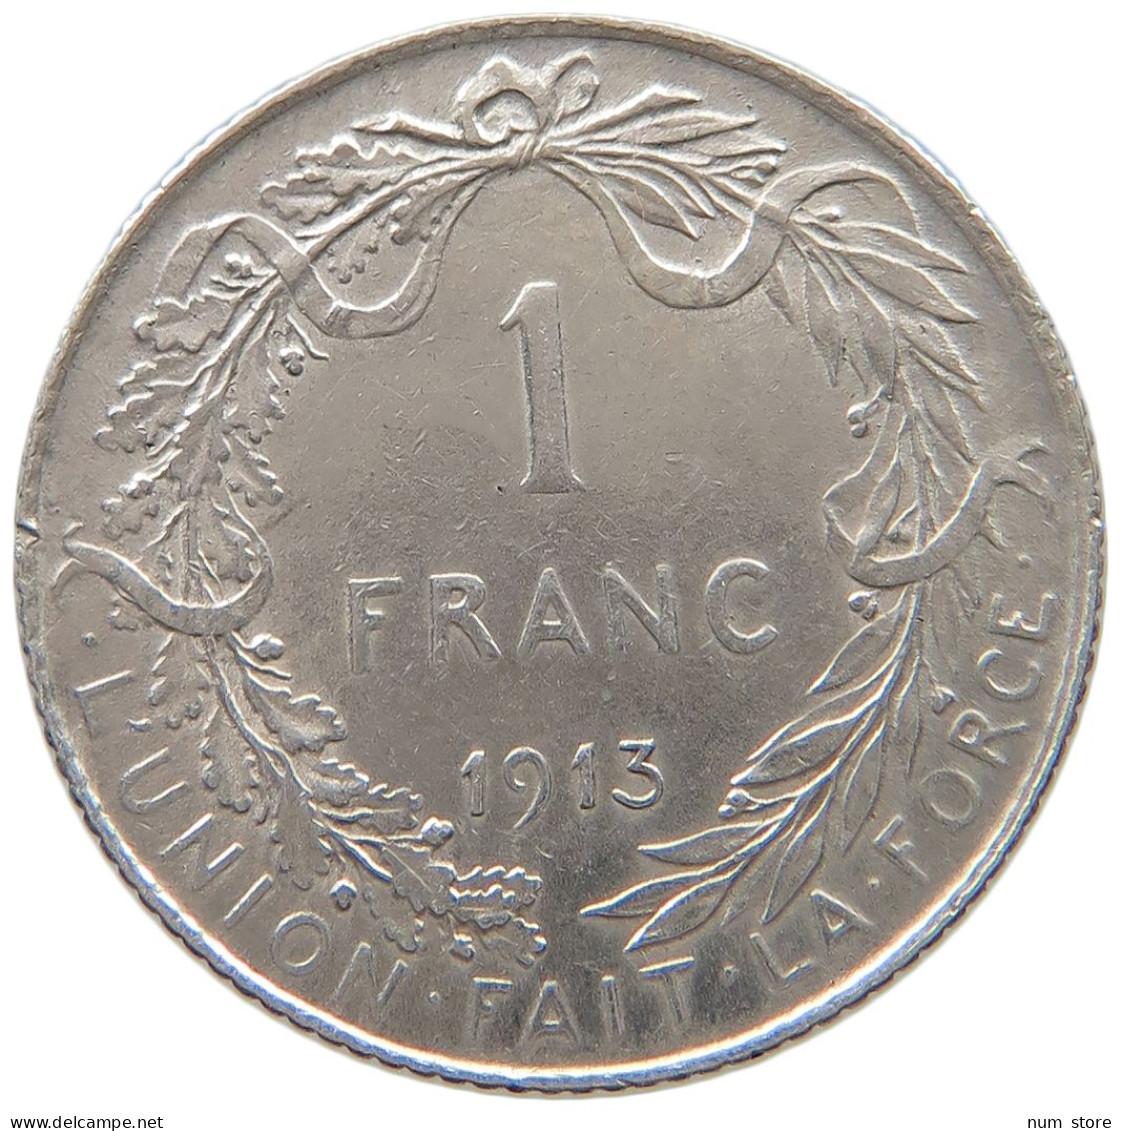 BELGIUM FRANC 1913 Albert I. 1909-1934 #a044 0857 - 1 Frank